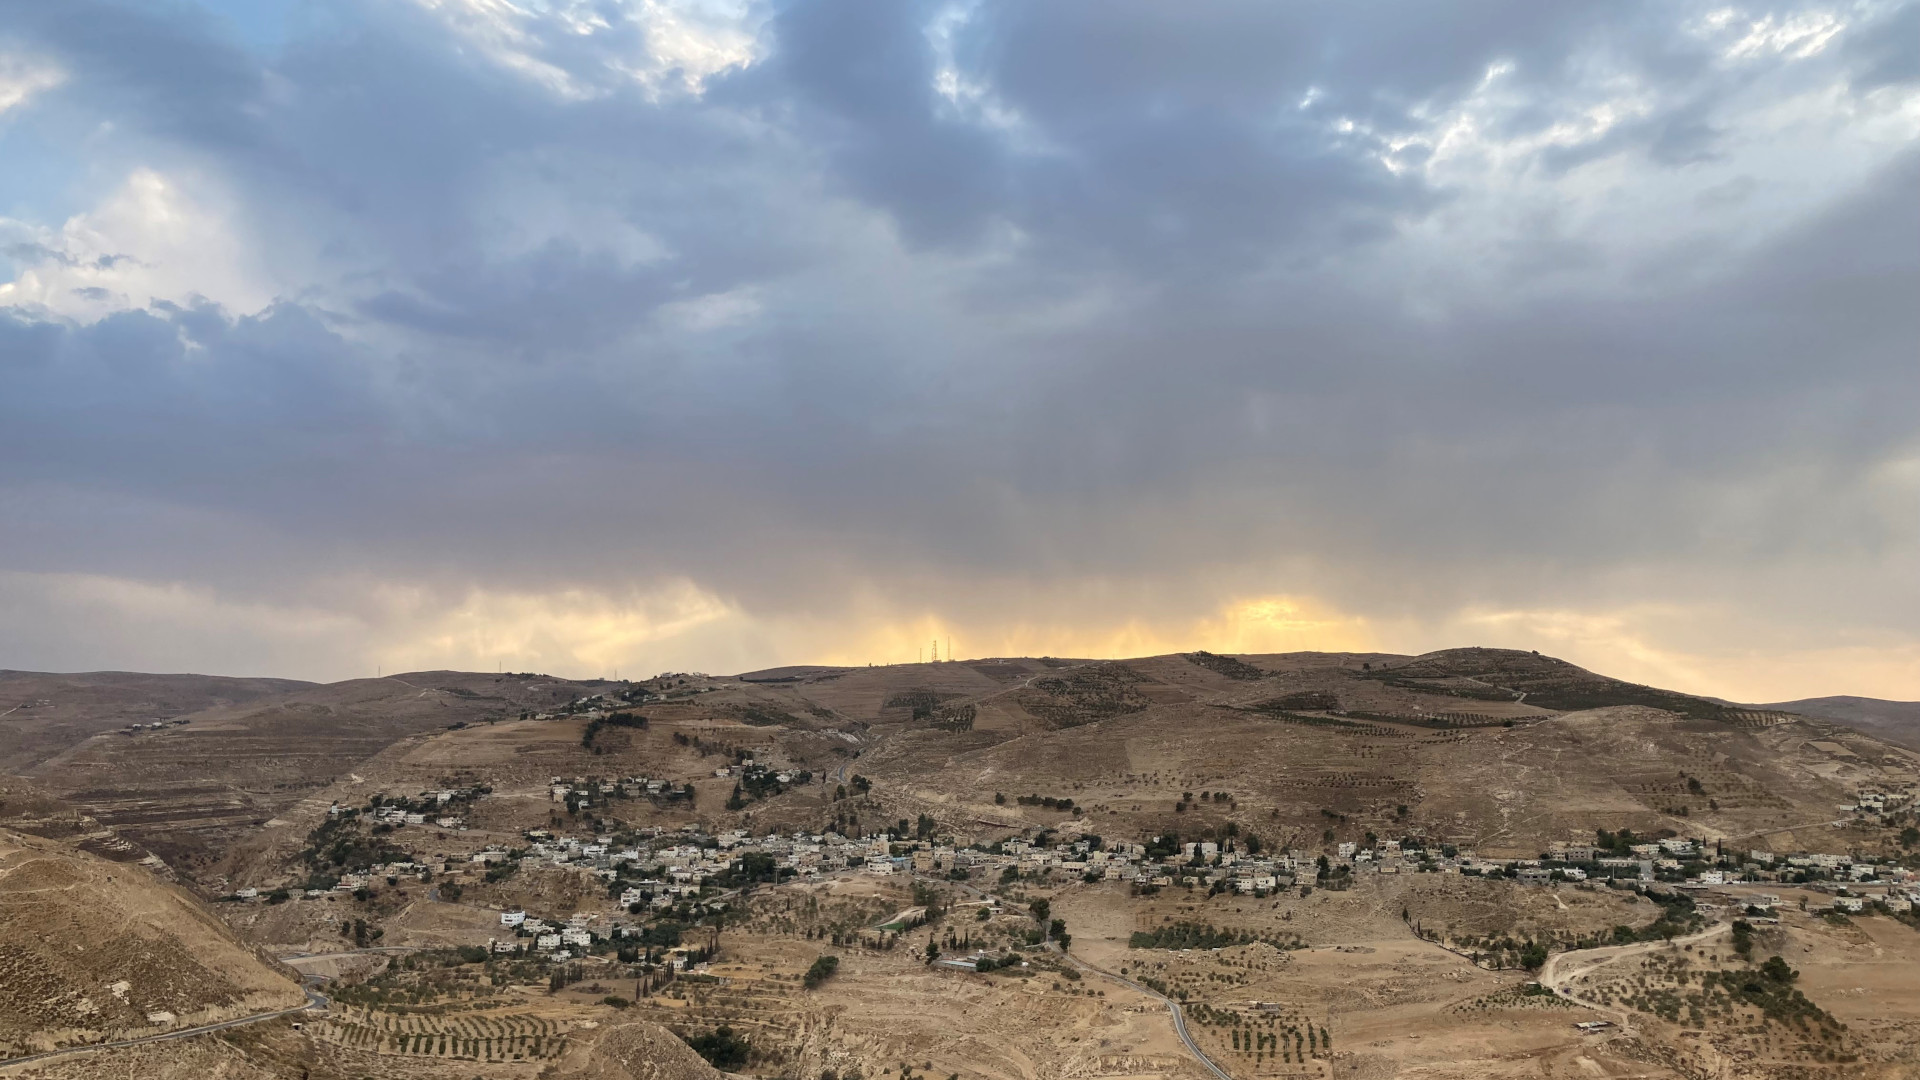 Blick von weit weg auf eine Stadt in sehr trockener Umgebung in Jordanien